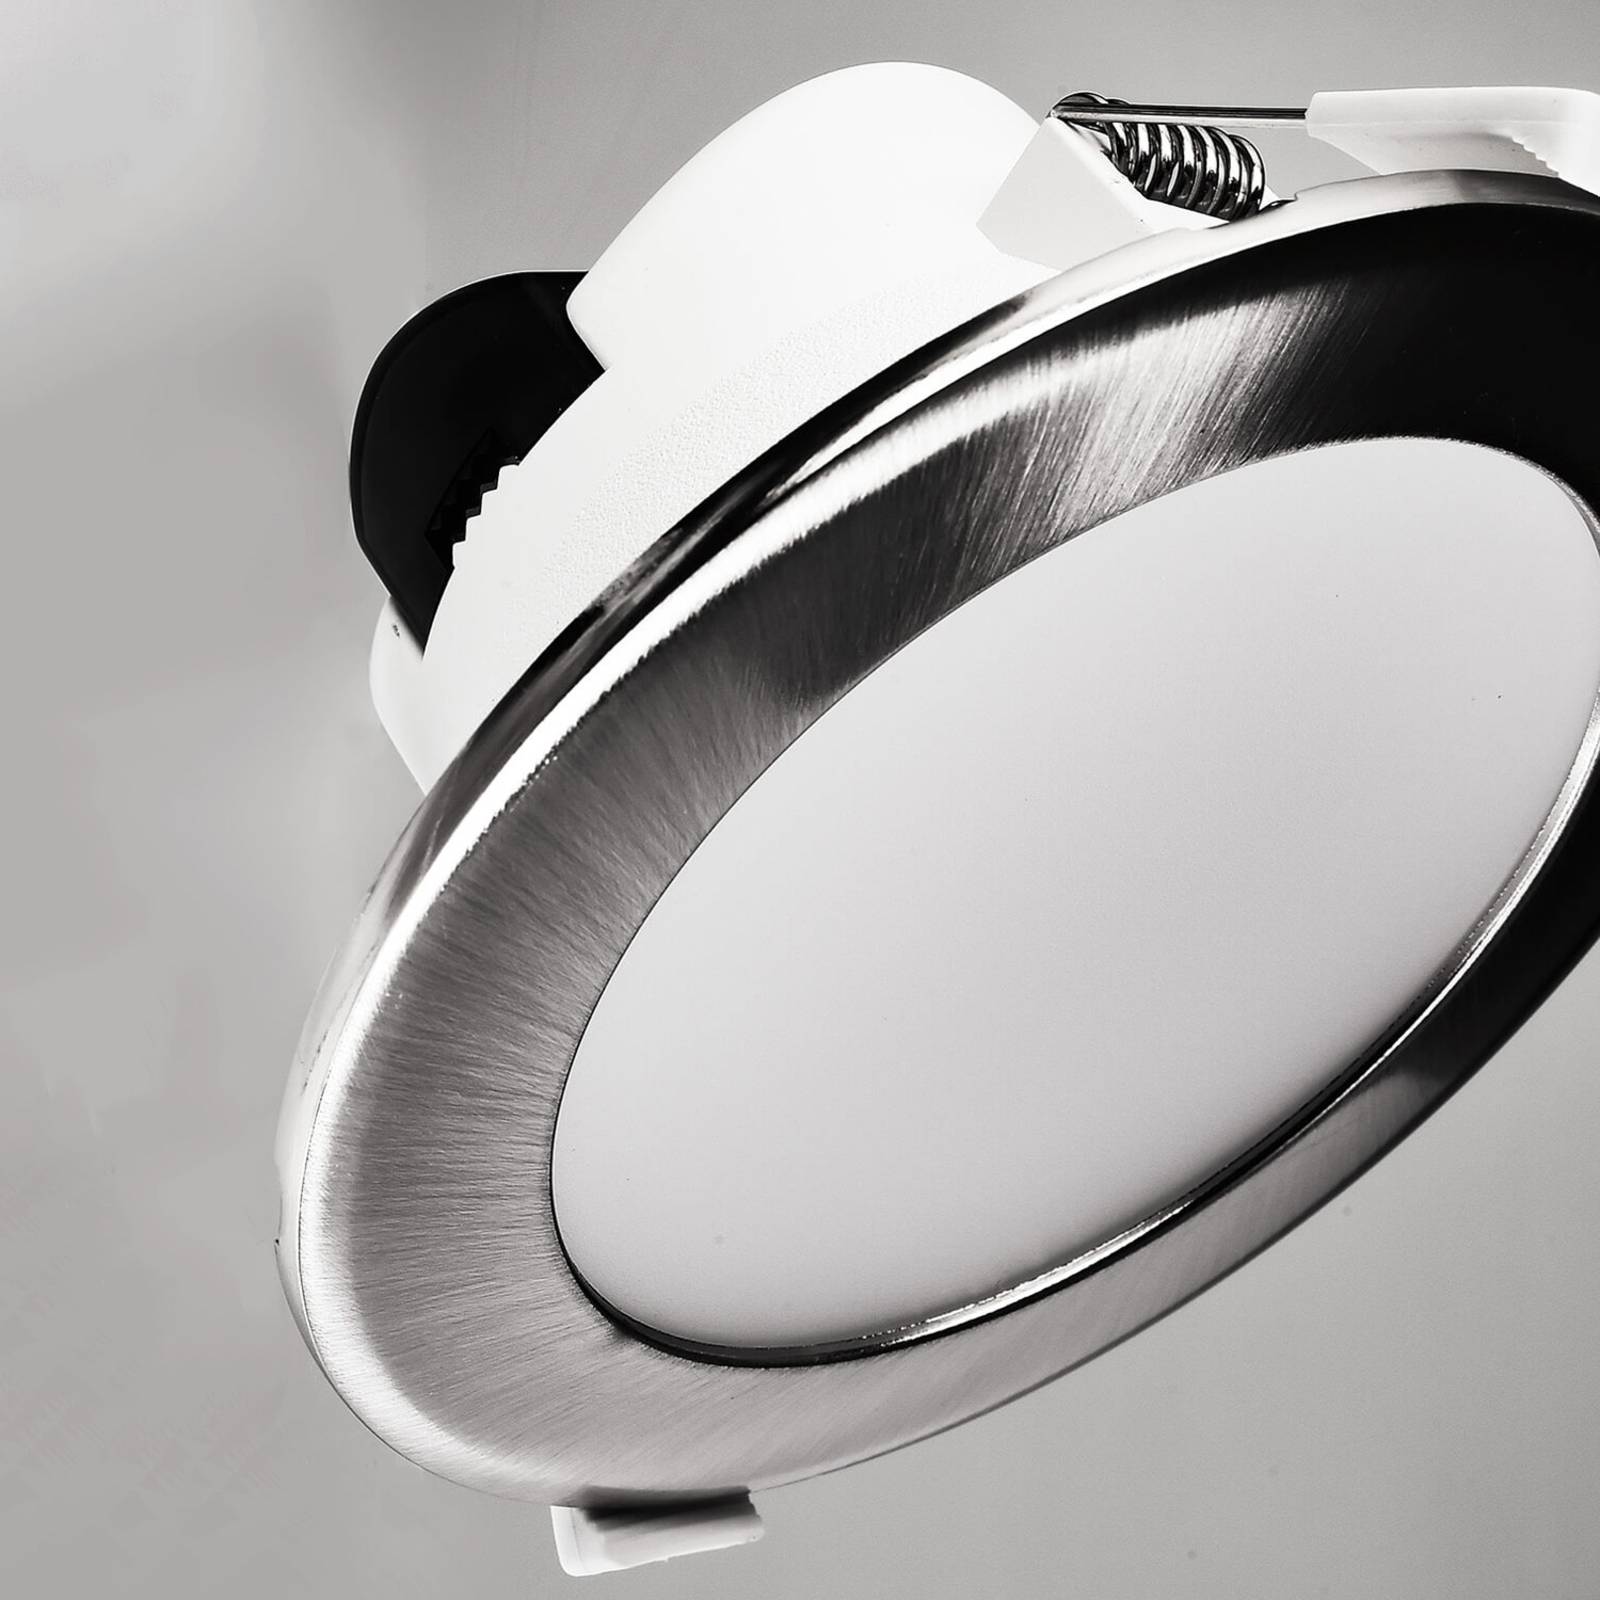 Deko-Light LED podhledové svítidlo Acrux 120, bílá, Ø 14,5 cm